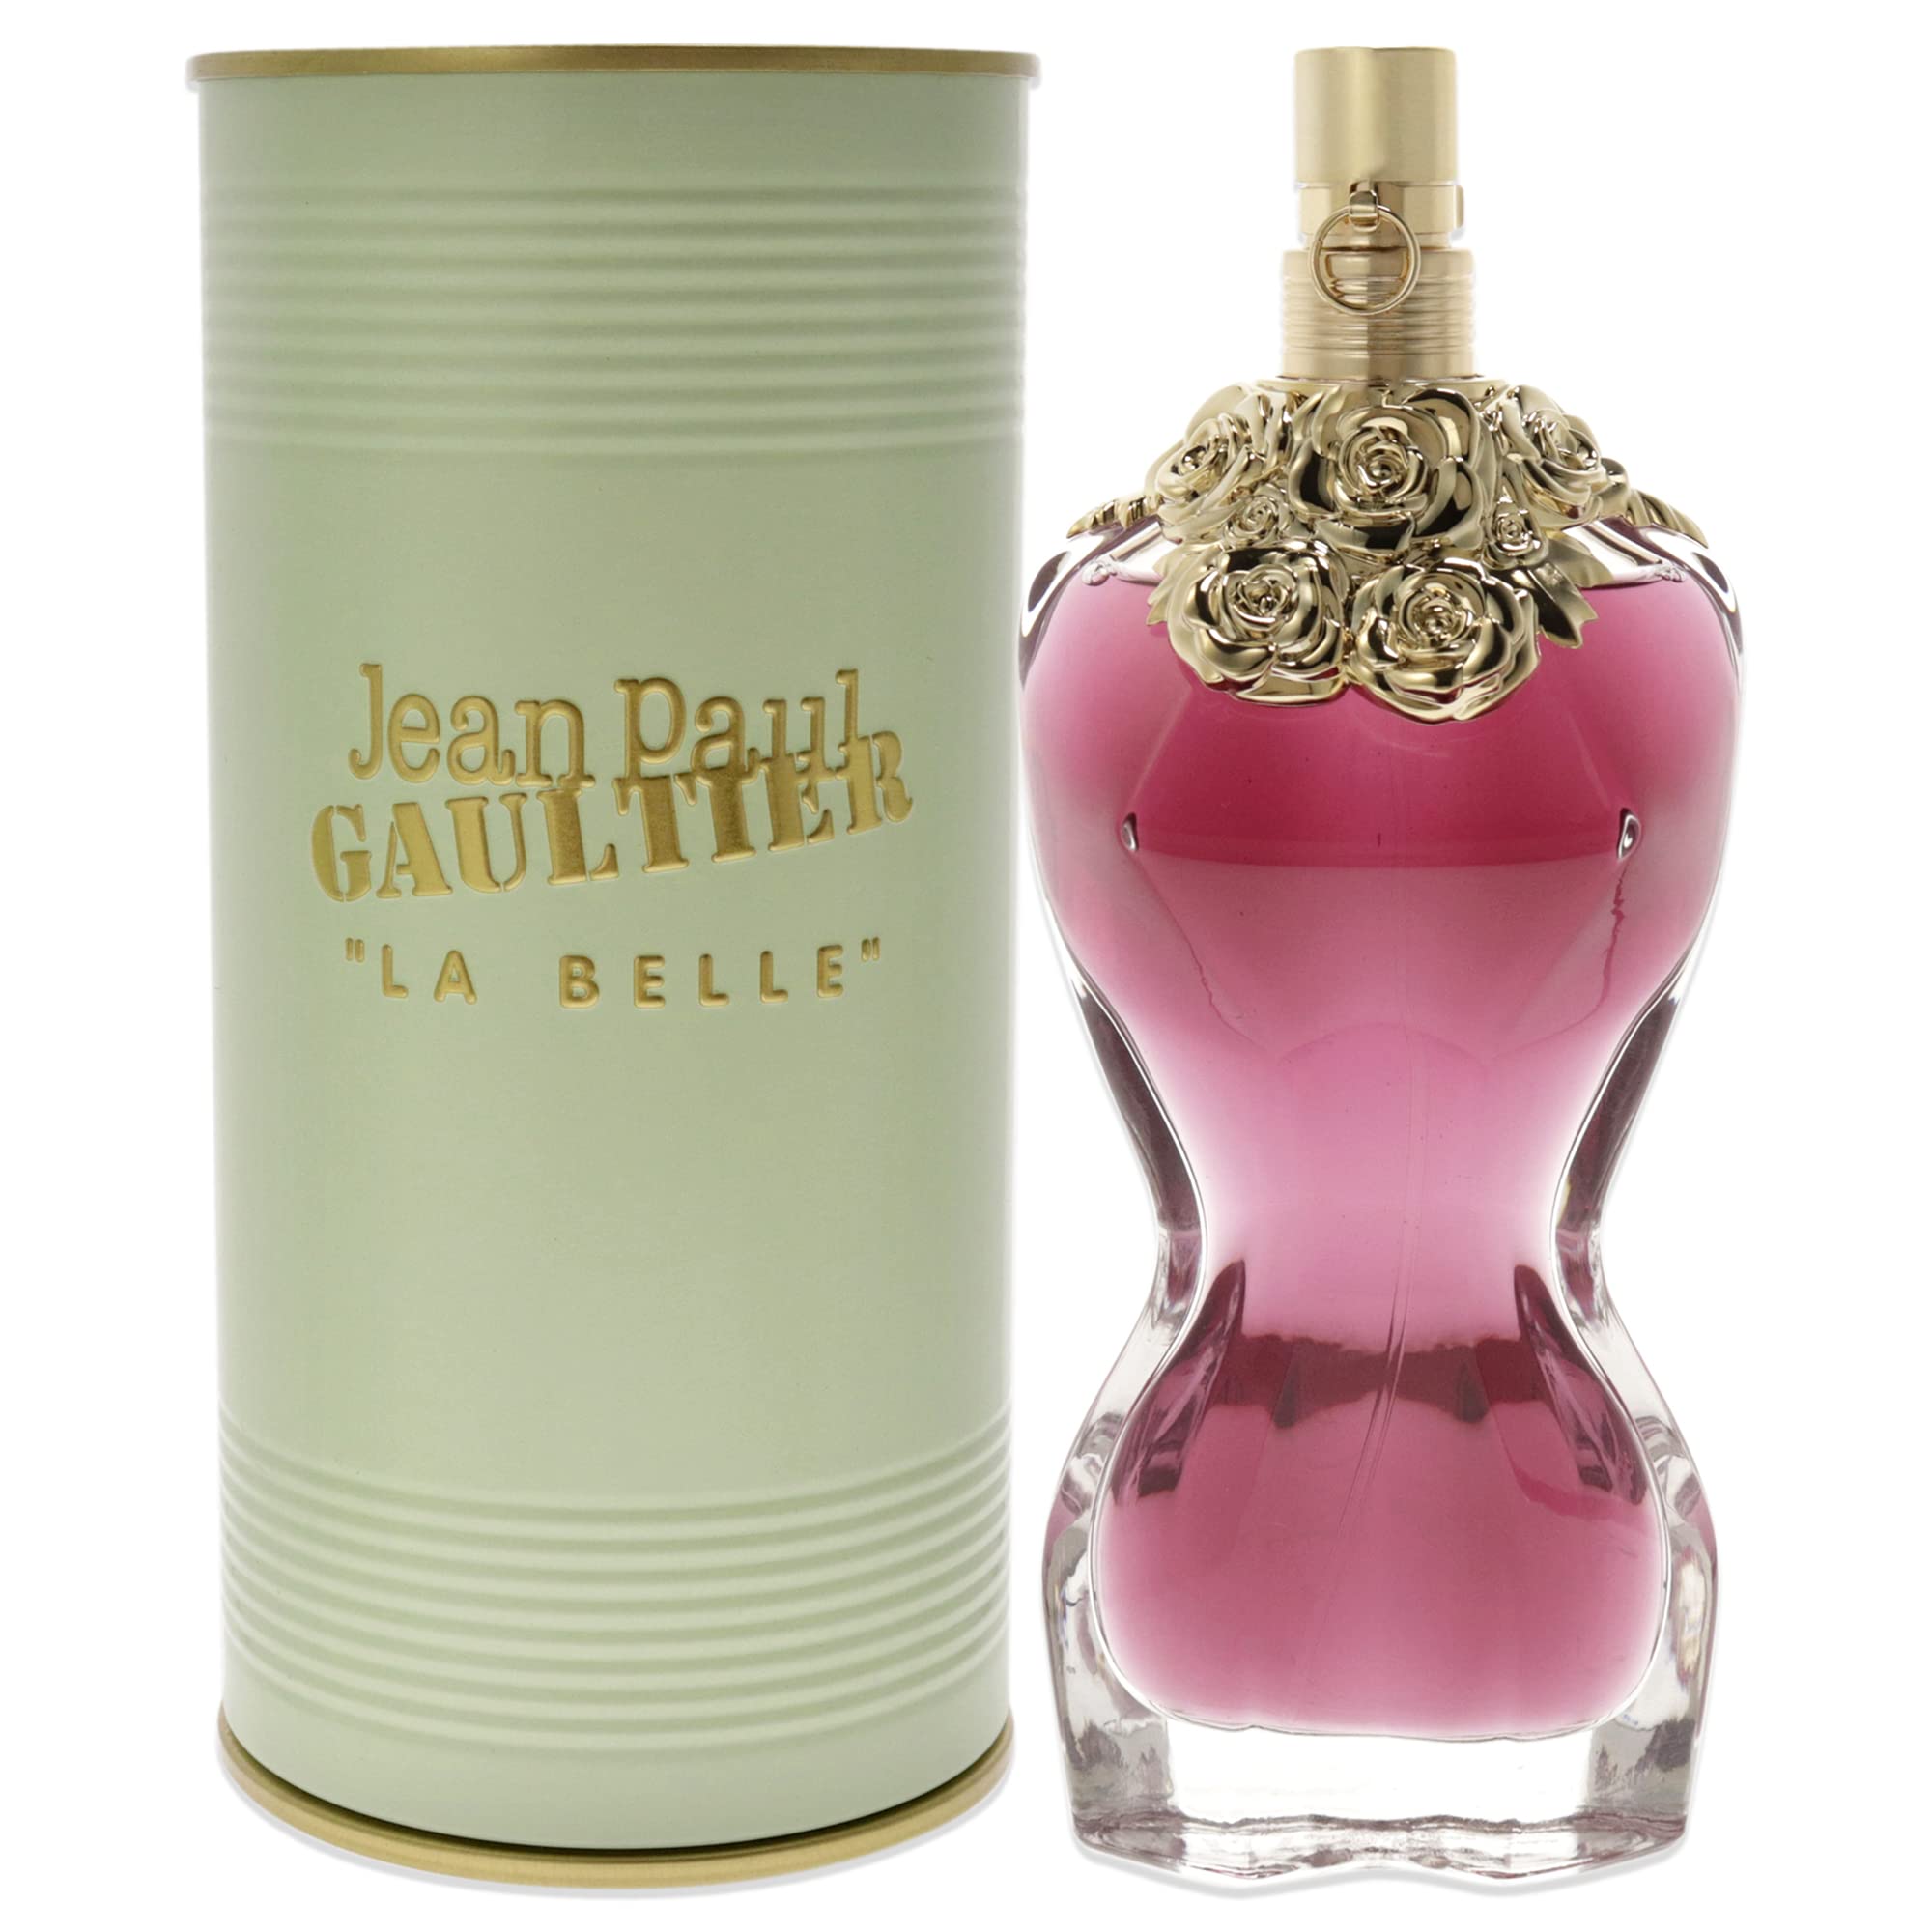 Jean Paul Gaultier La Belle for Women Eau De Parfum Spray, 3.4 Ounce (New Launch 2020), Multi-color